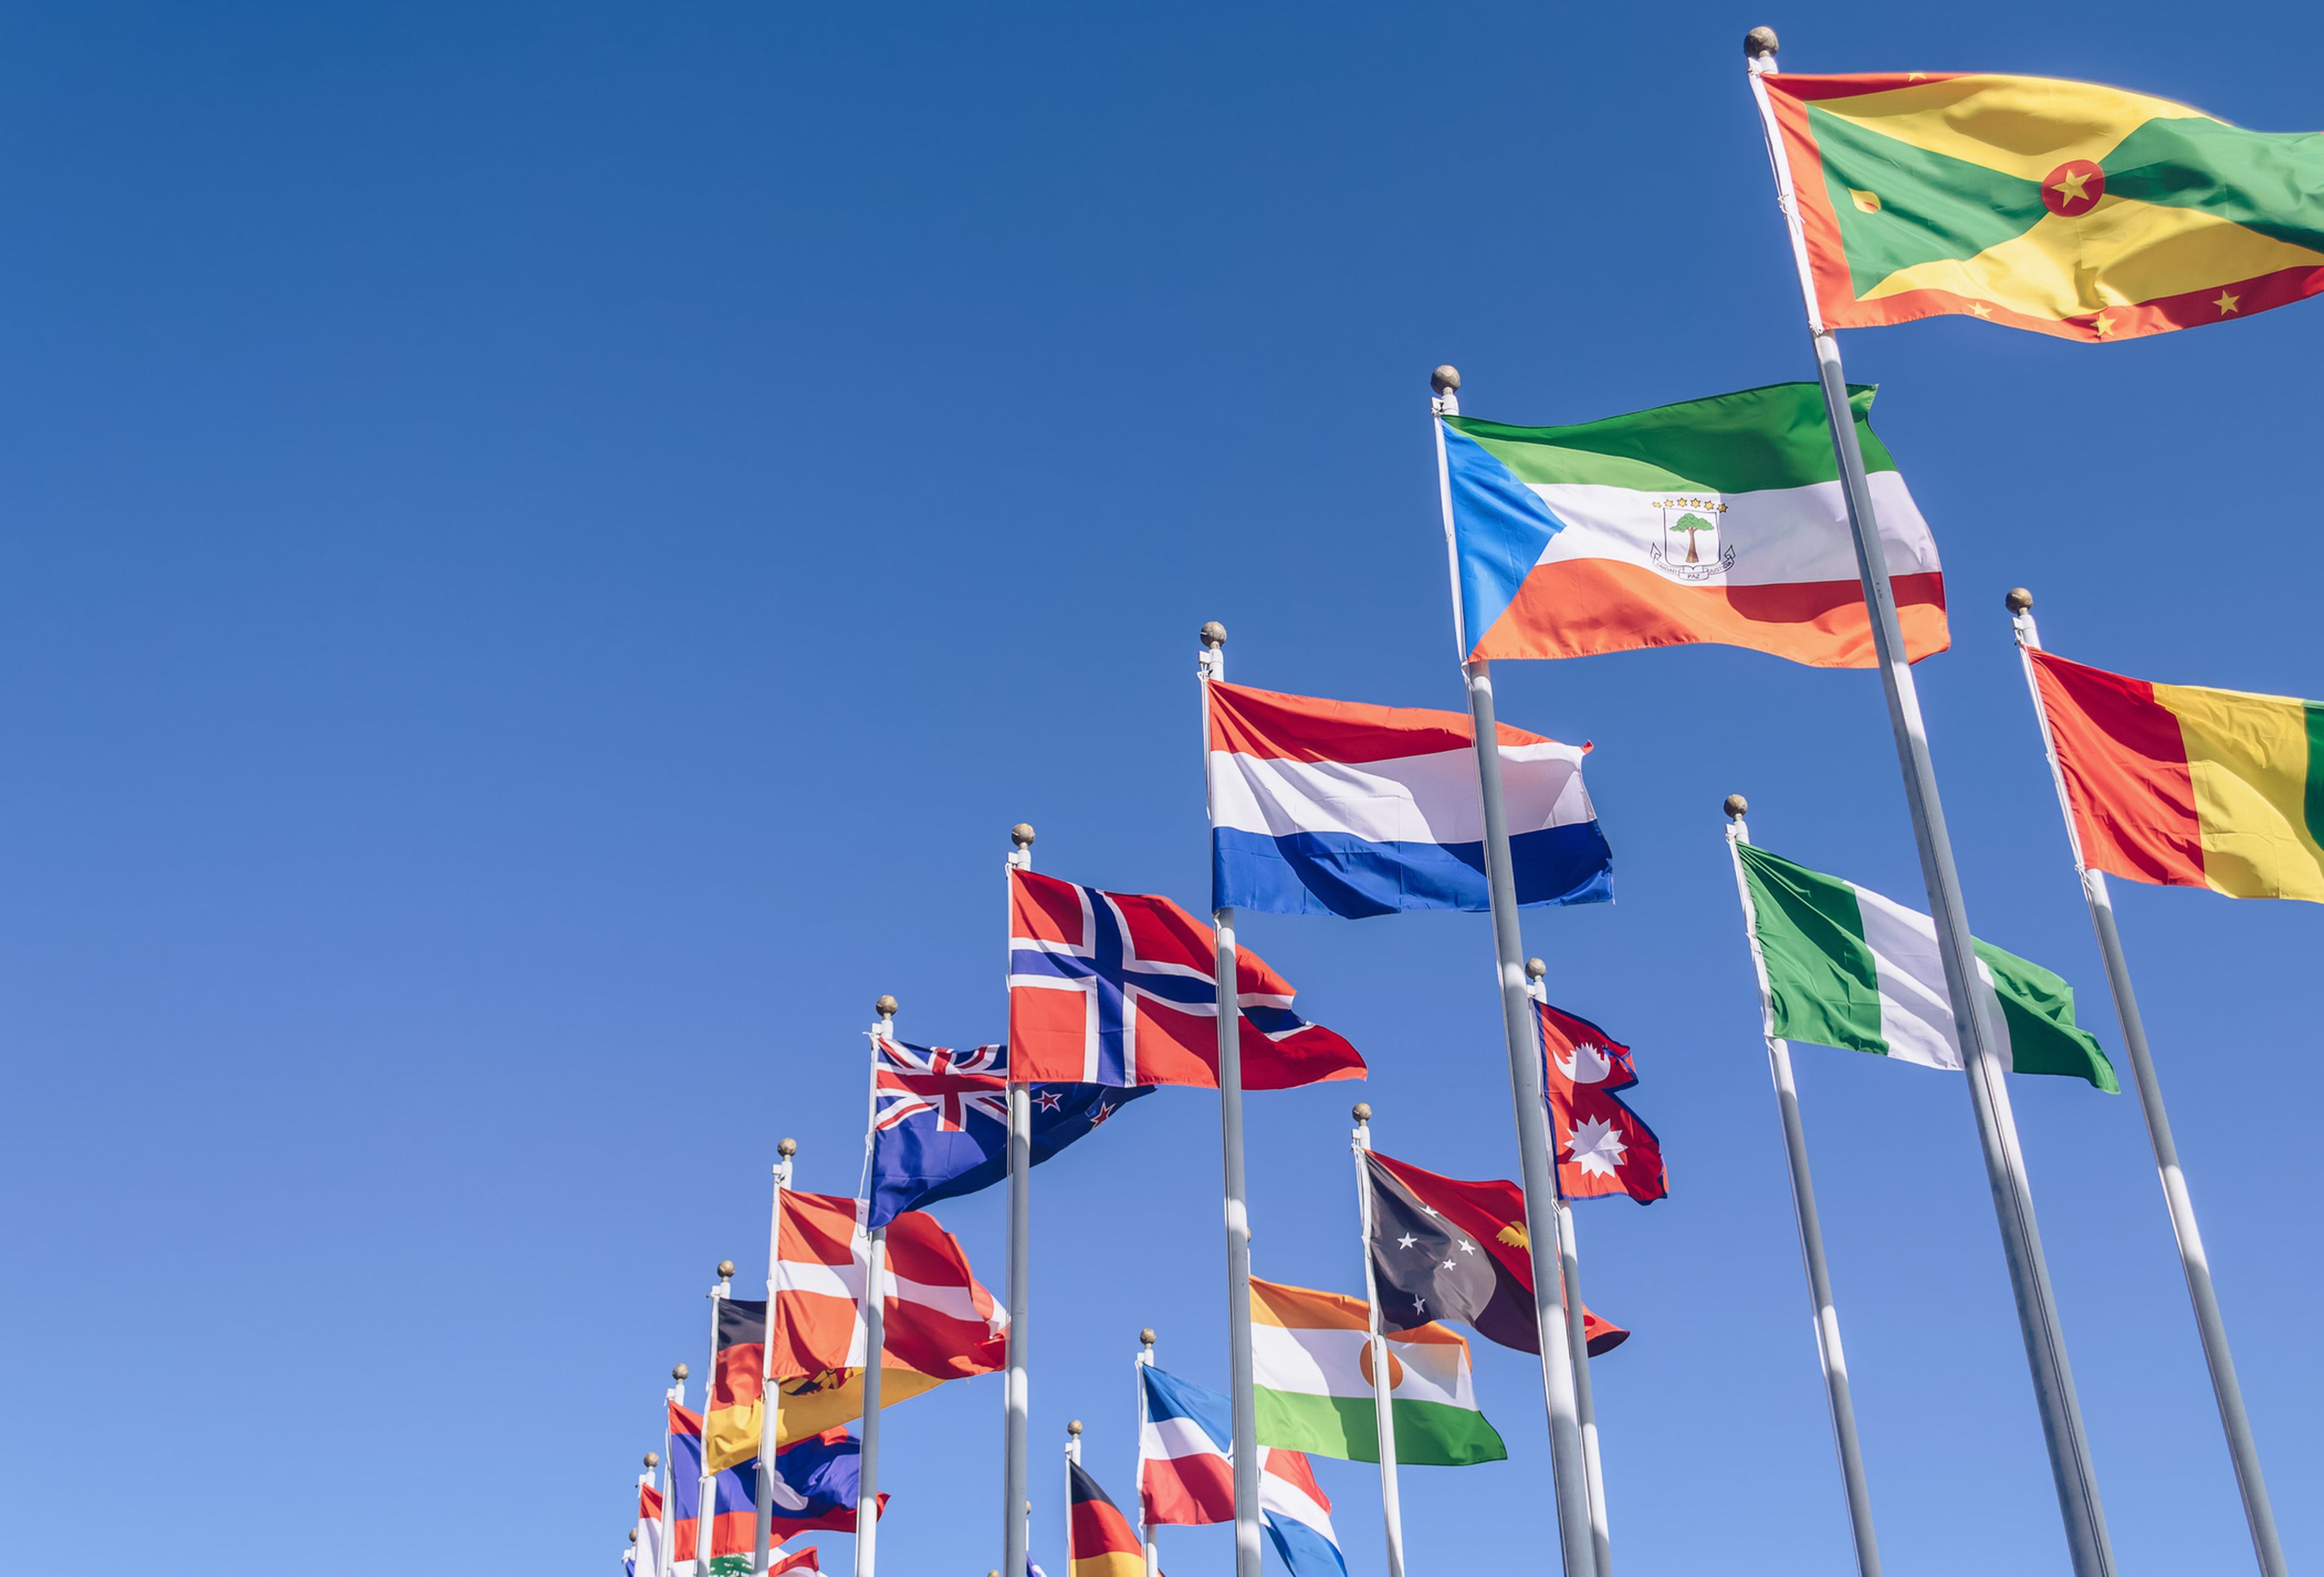 Banderas de varios países